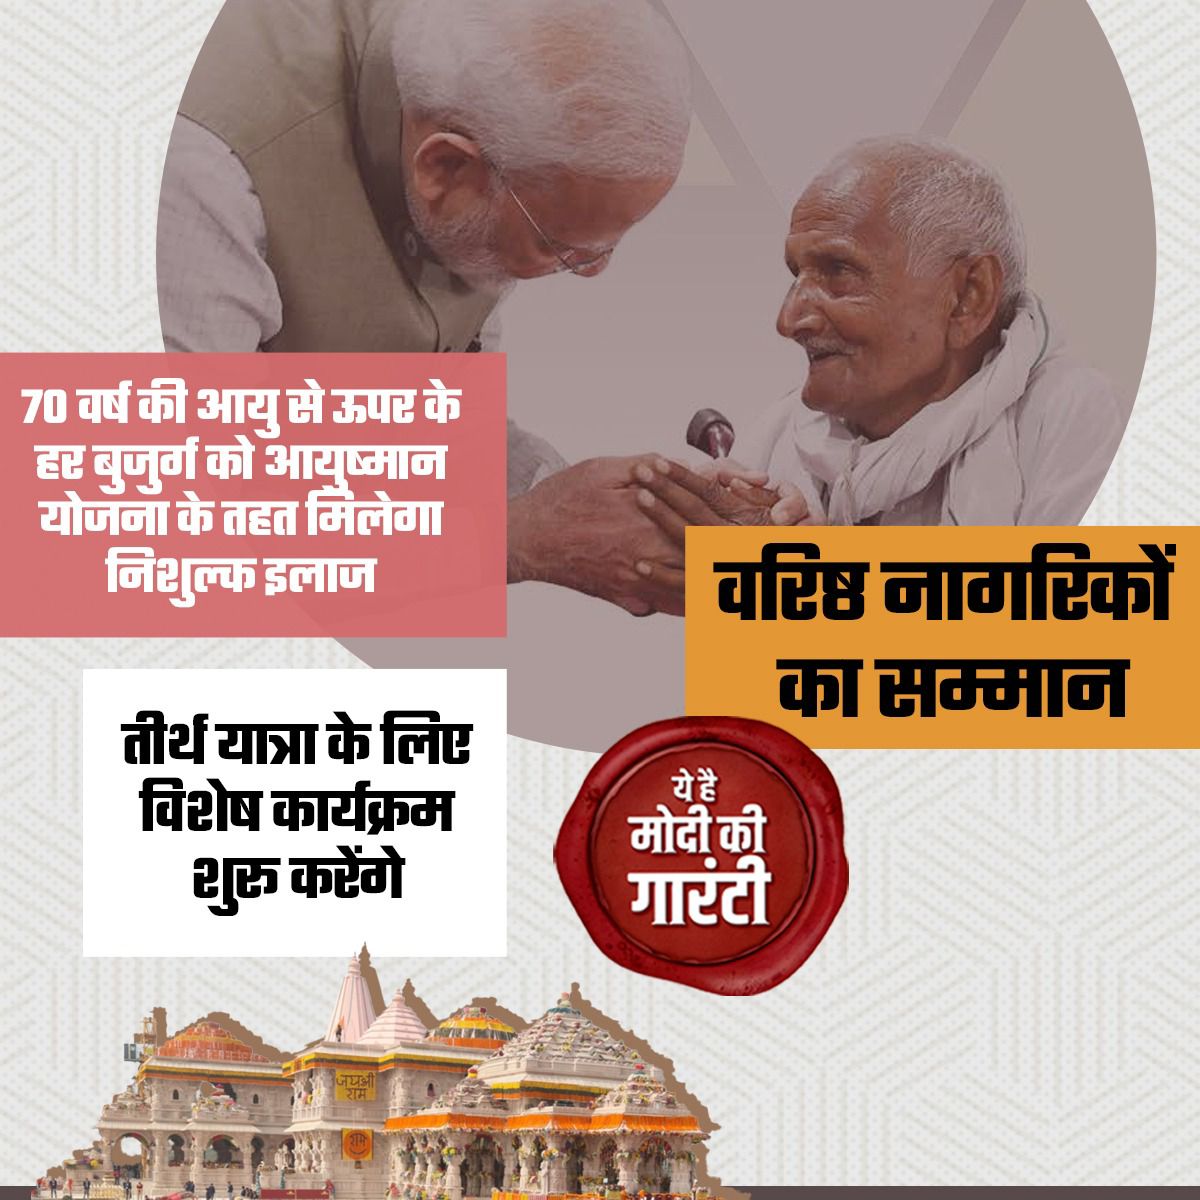 'मोदी जी ने गारंटी दी है, हर परिवार में 70 वर्ष के ऊपर की आयु के बुजुर्गों के इलाज का 5 लाख रुपये तक का खर्च दिल्ली में बैठा उनका ये बेटा उठाएगा।' #ModiKiGuarantee @narendramodi